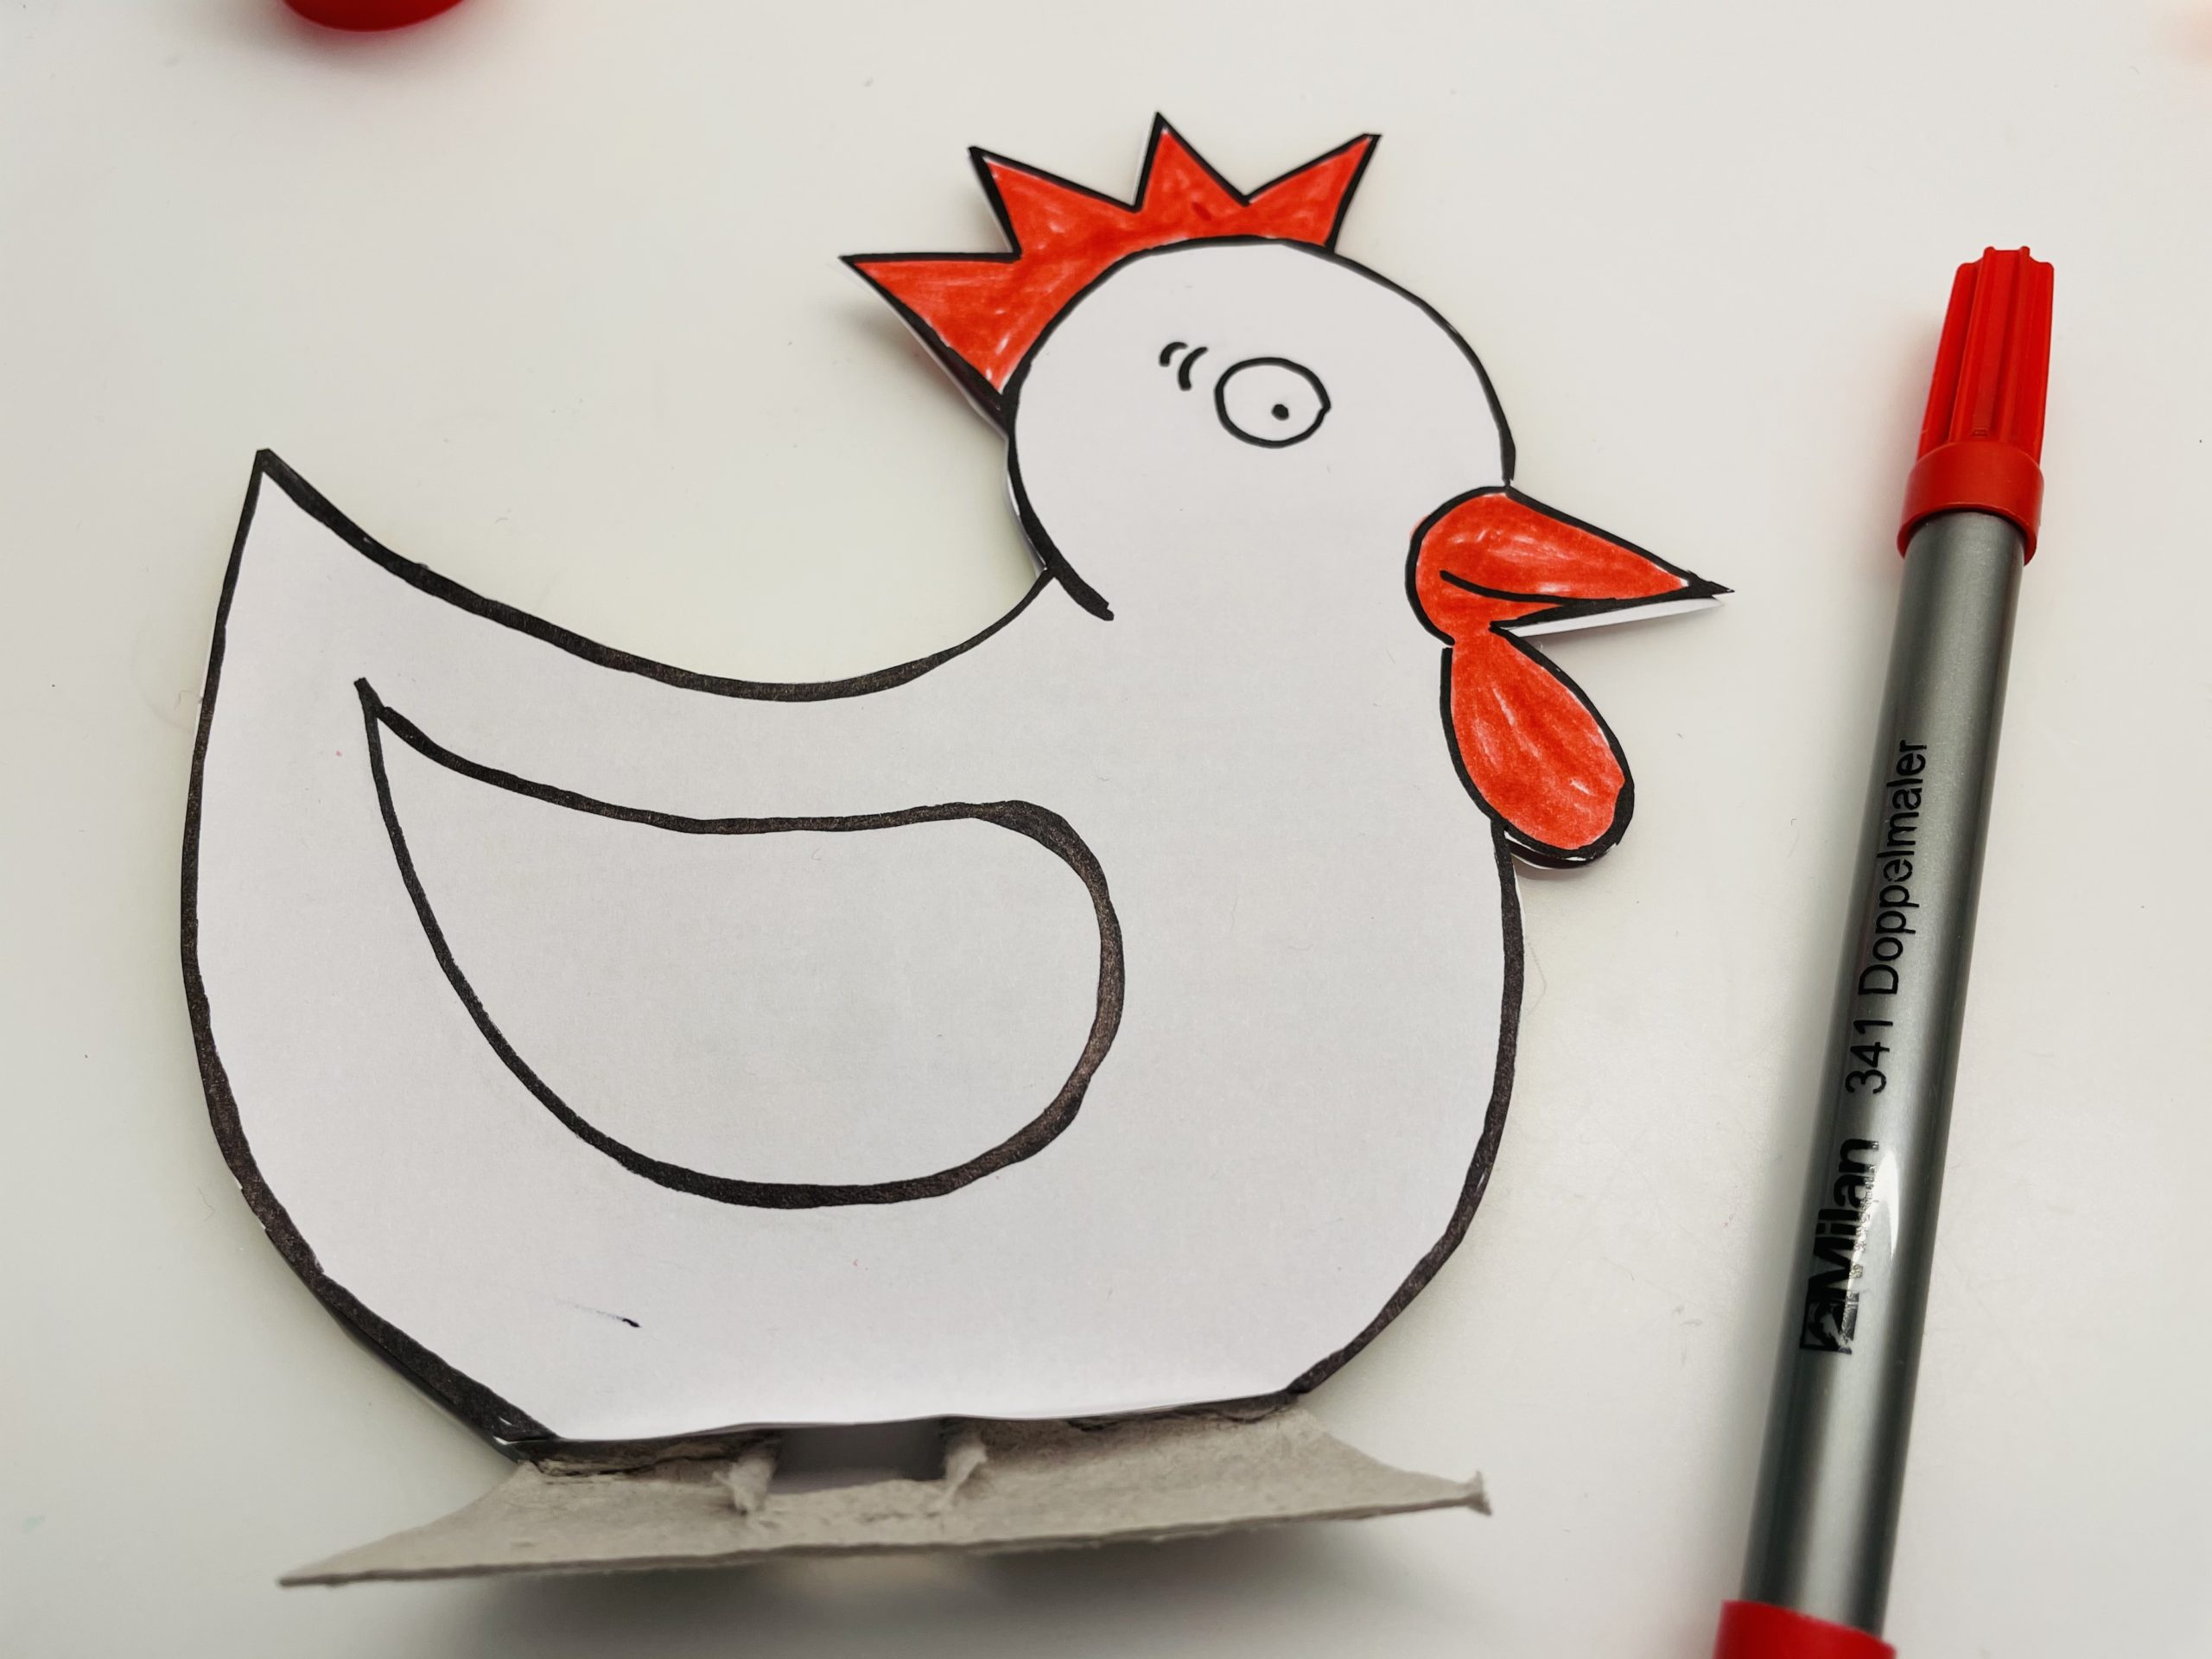 2. Bild zum Schritt 24 für die Kinder-Beschäftigung: 'Jetzt malt ihr das Huhn mit Filzstiften oder Buntstiften aus.'